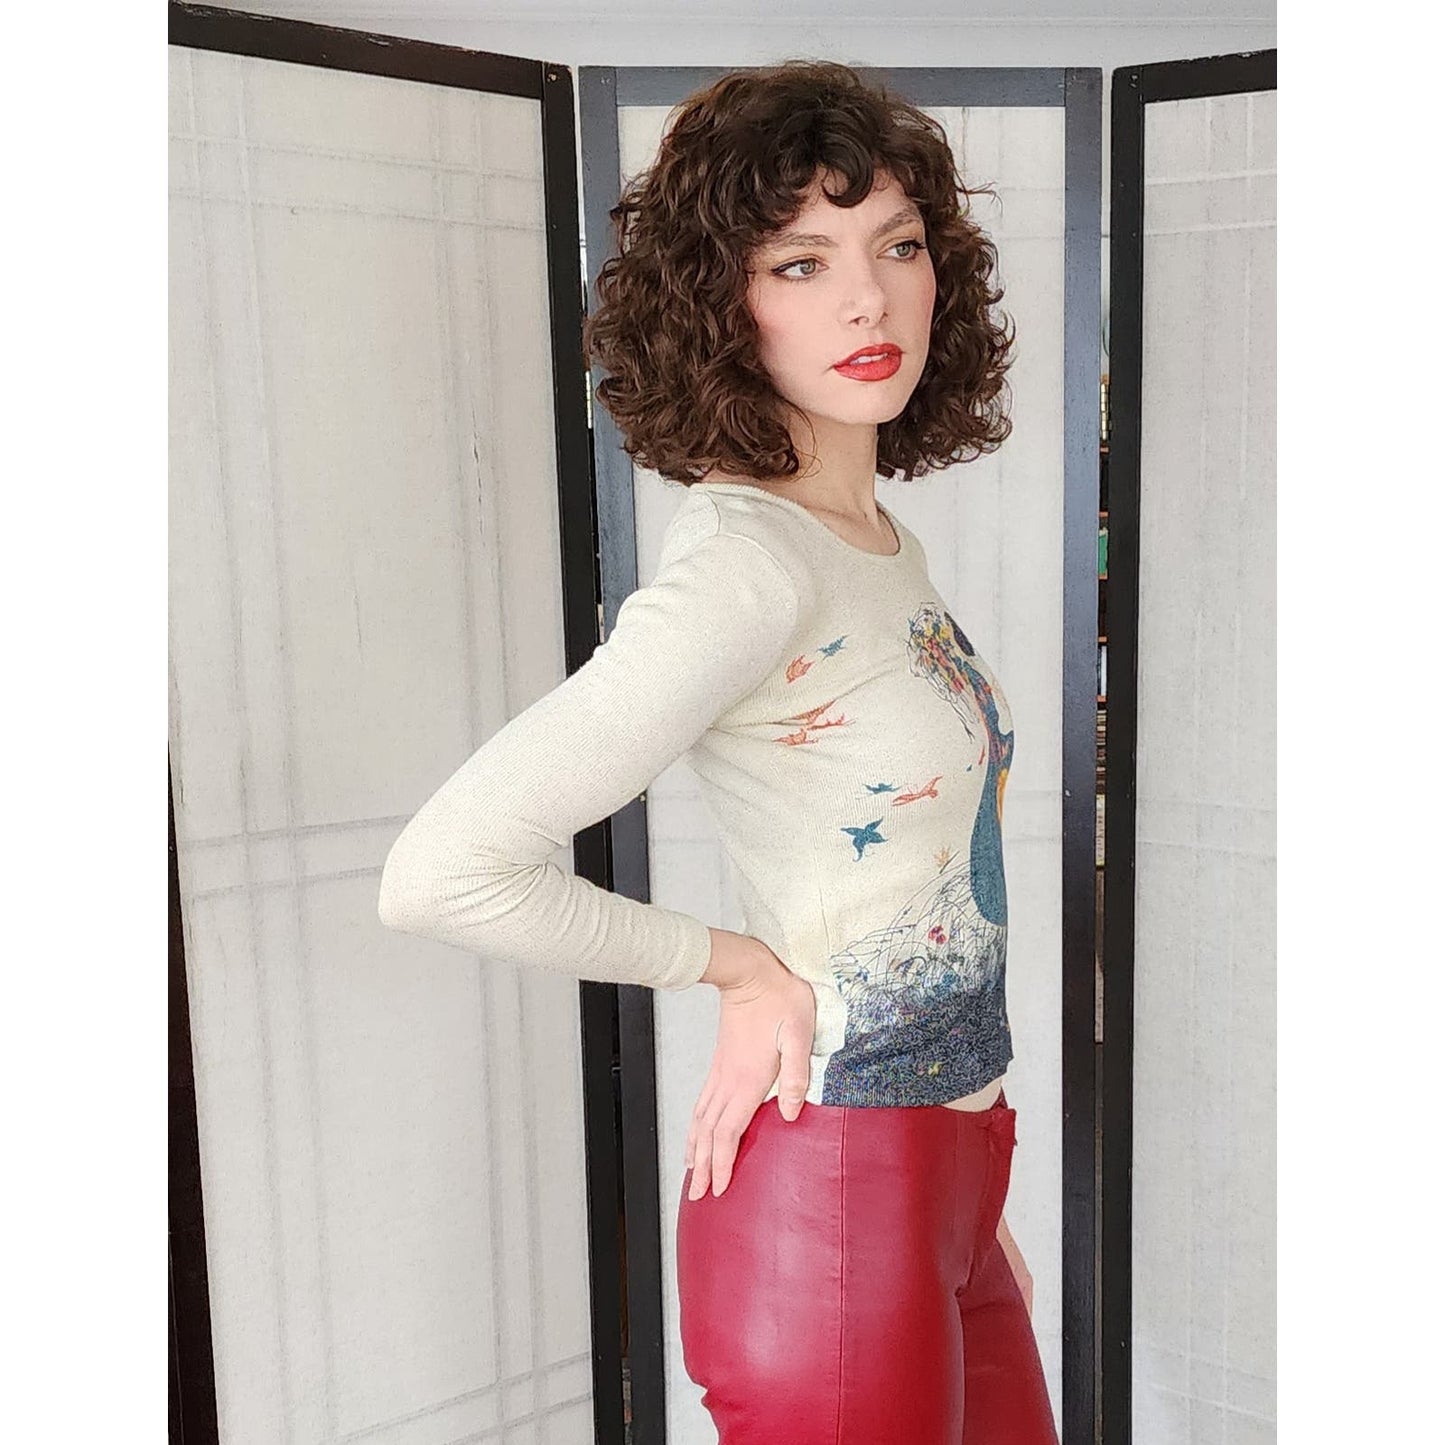 Vintage Leather Pants Burgundy Red Low Rise Y2K Pelle Studio Wilsons